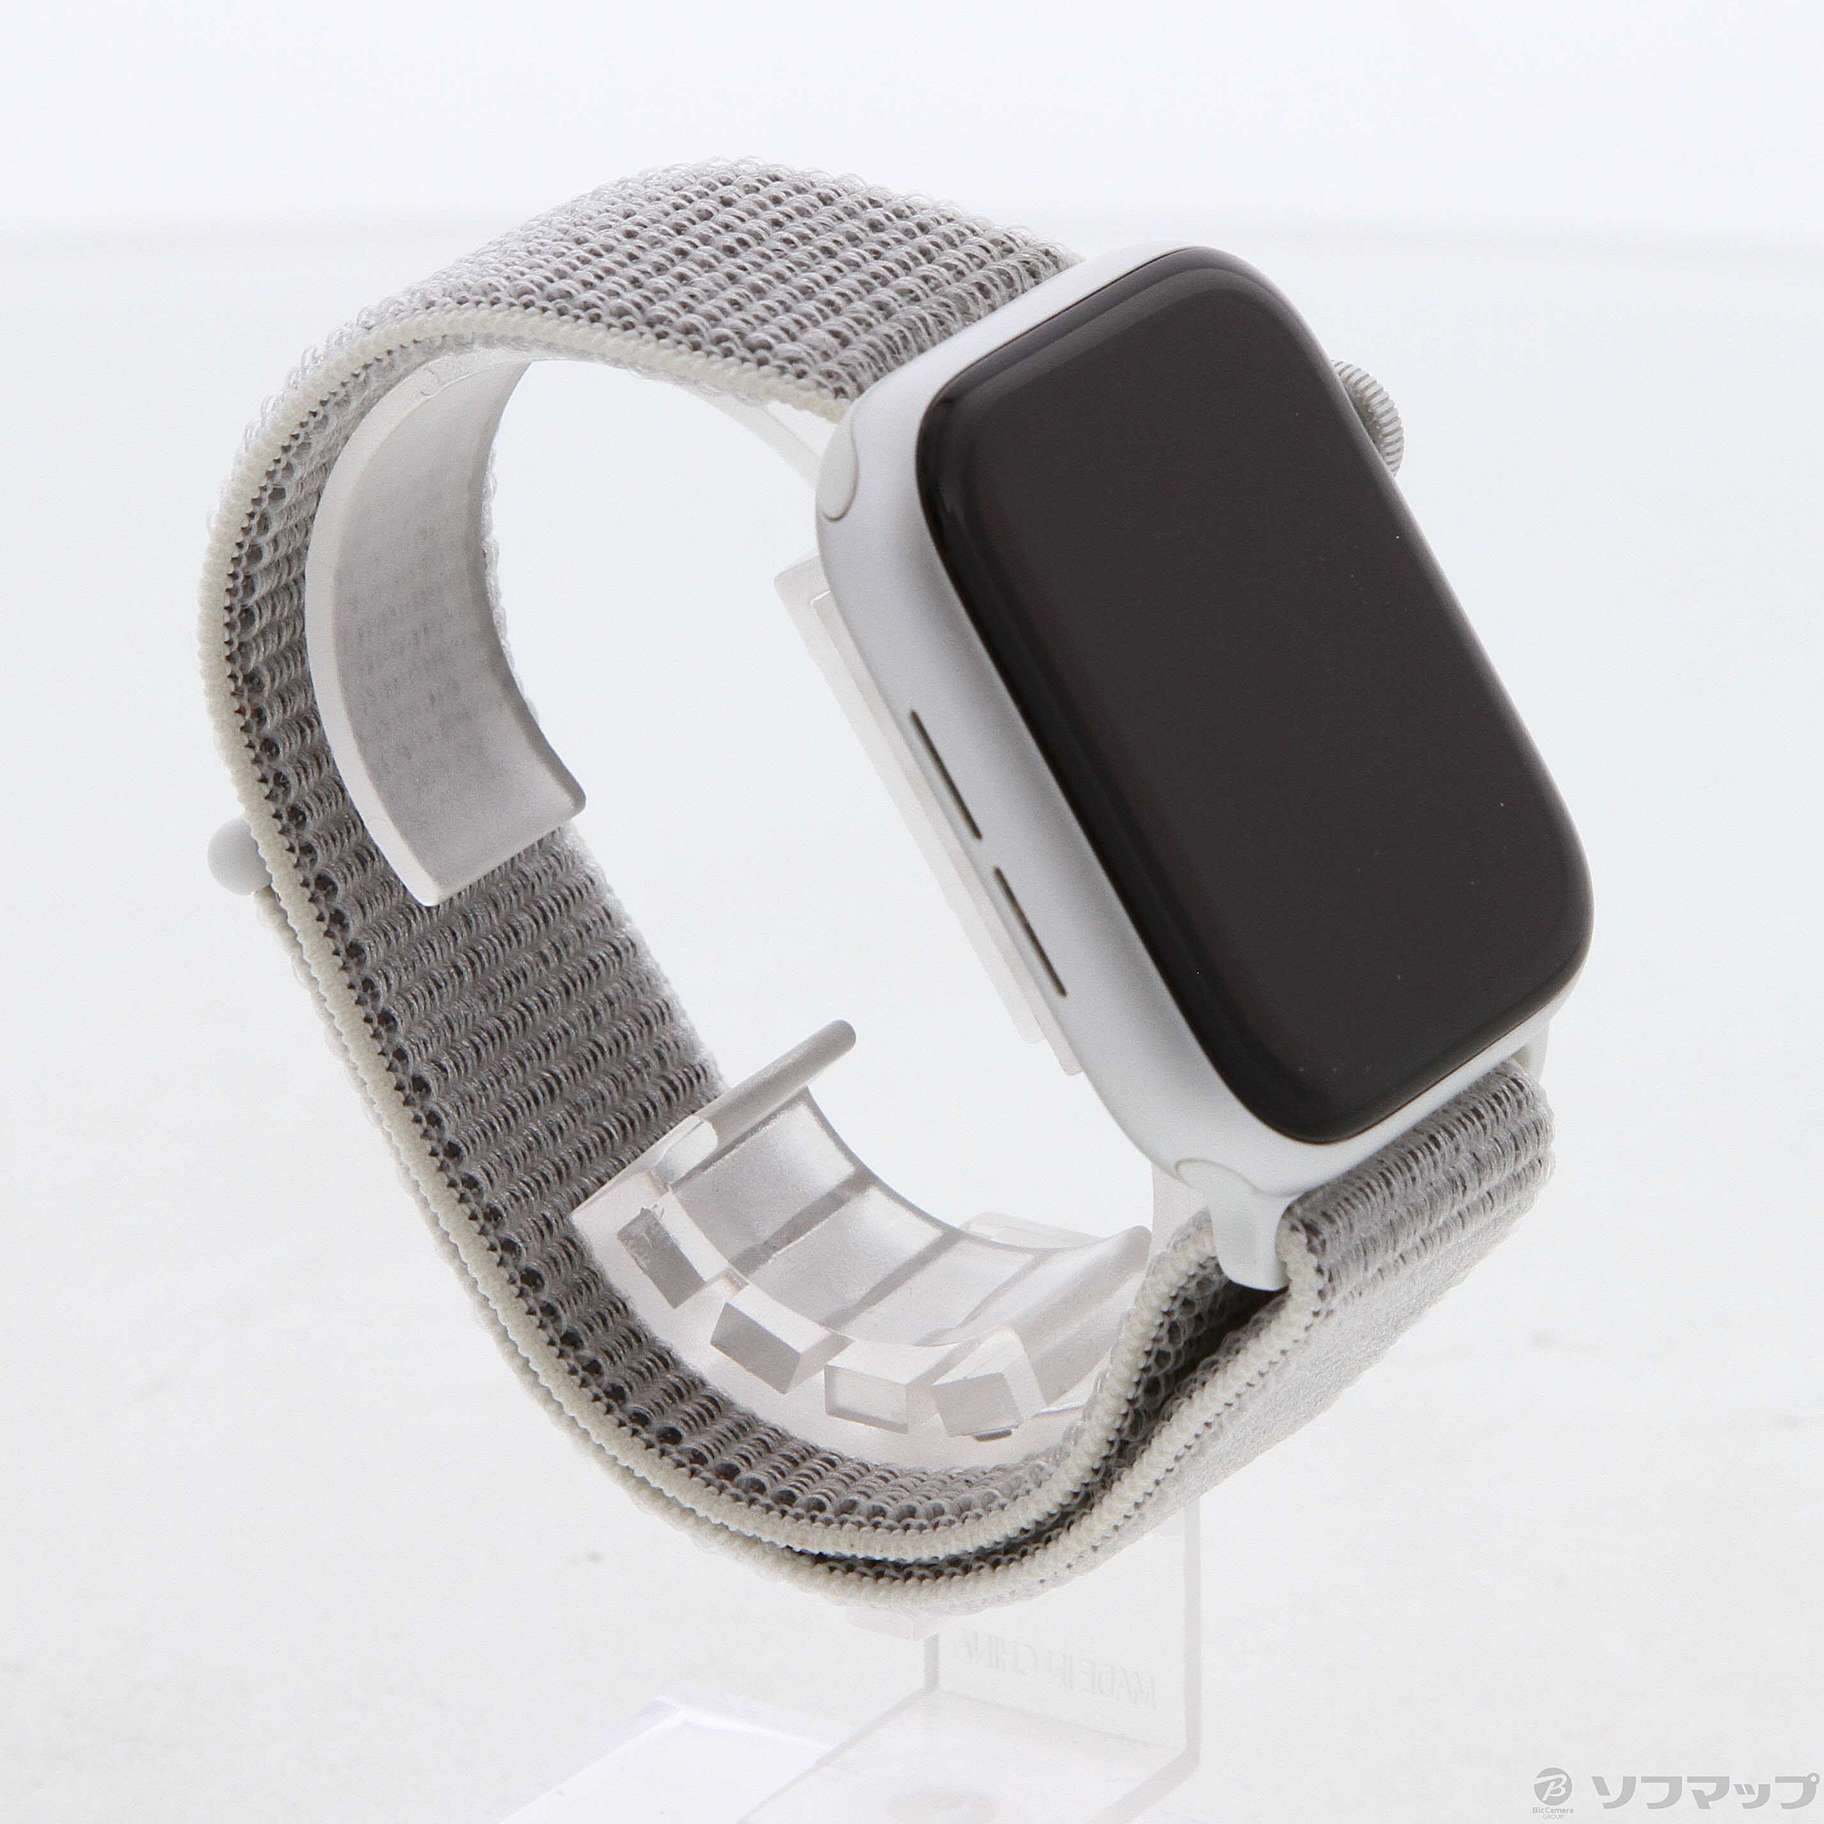 中古品〕 Apple Watch Series 4 GPS 44mm シルバーアルミニウムケース